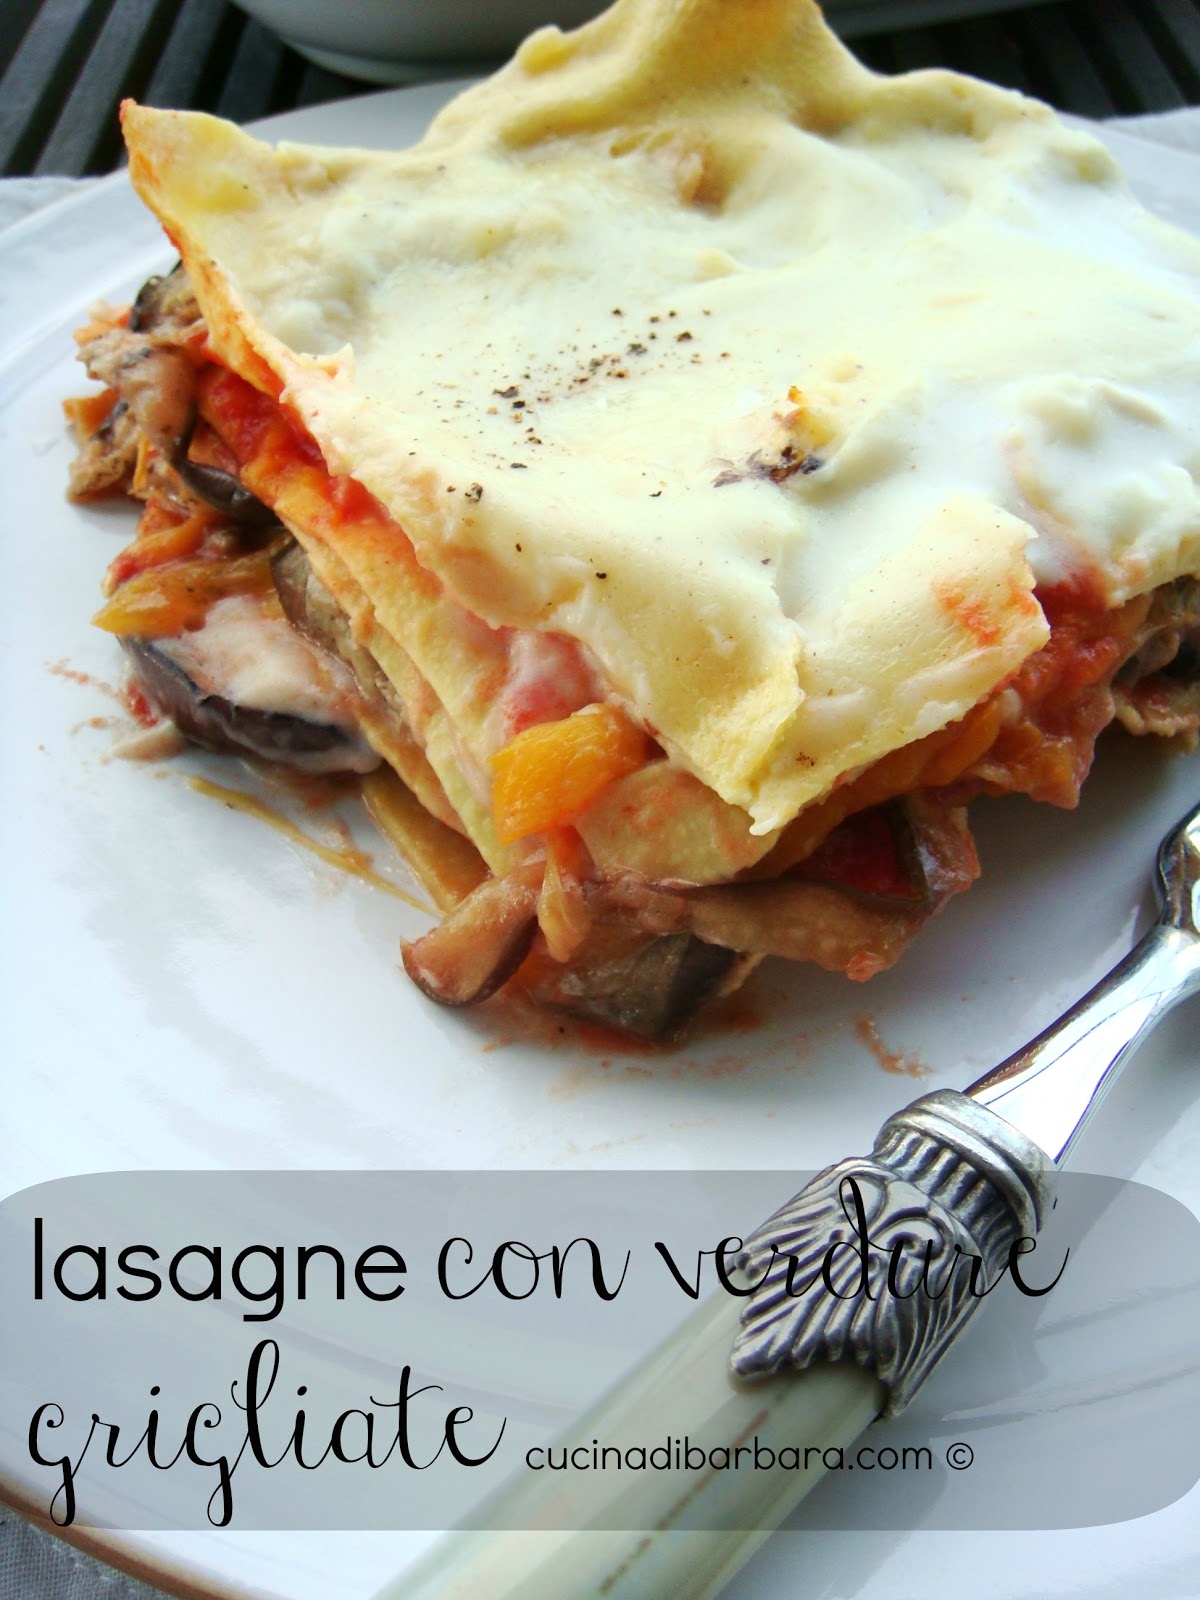 Cucina di Barbara food blog - blog di cucina ricette: Ricetta lasagne ...